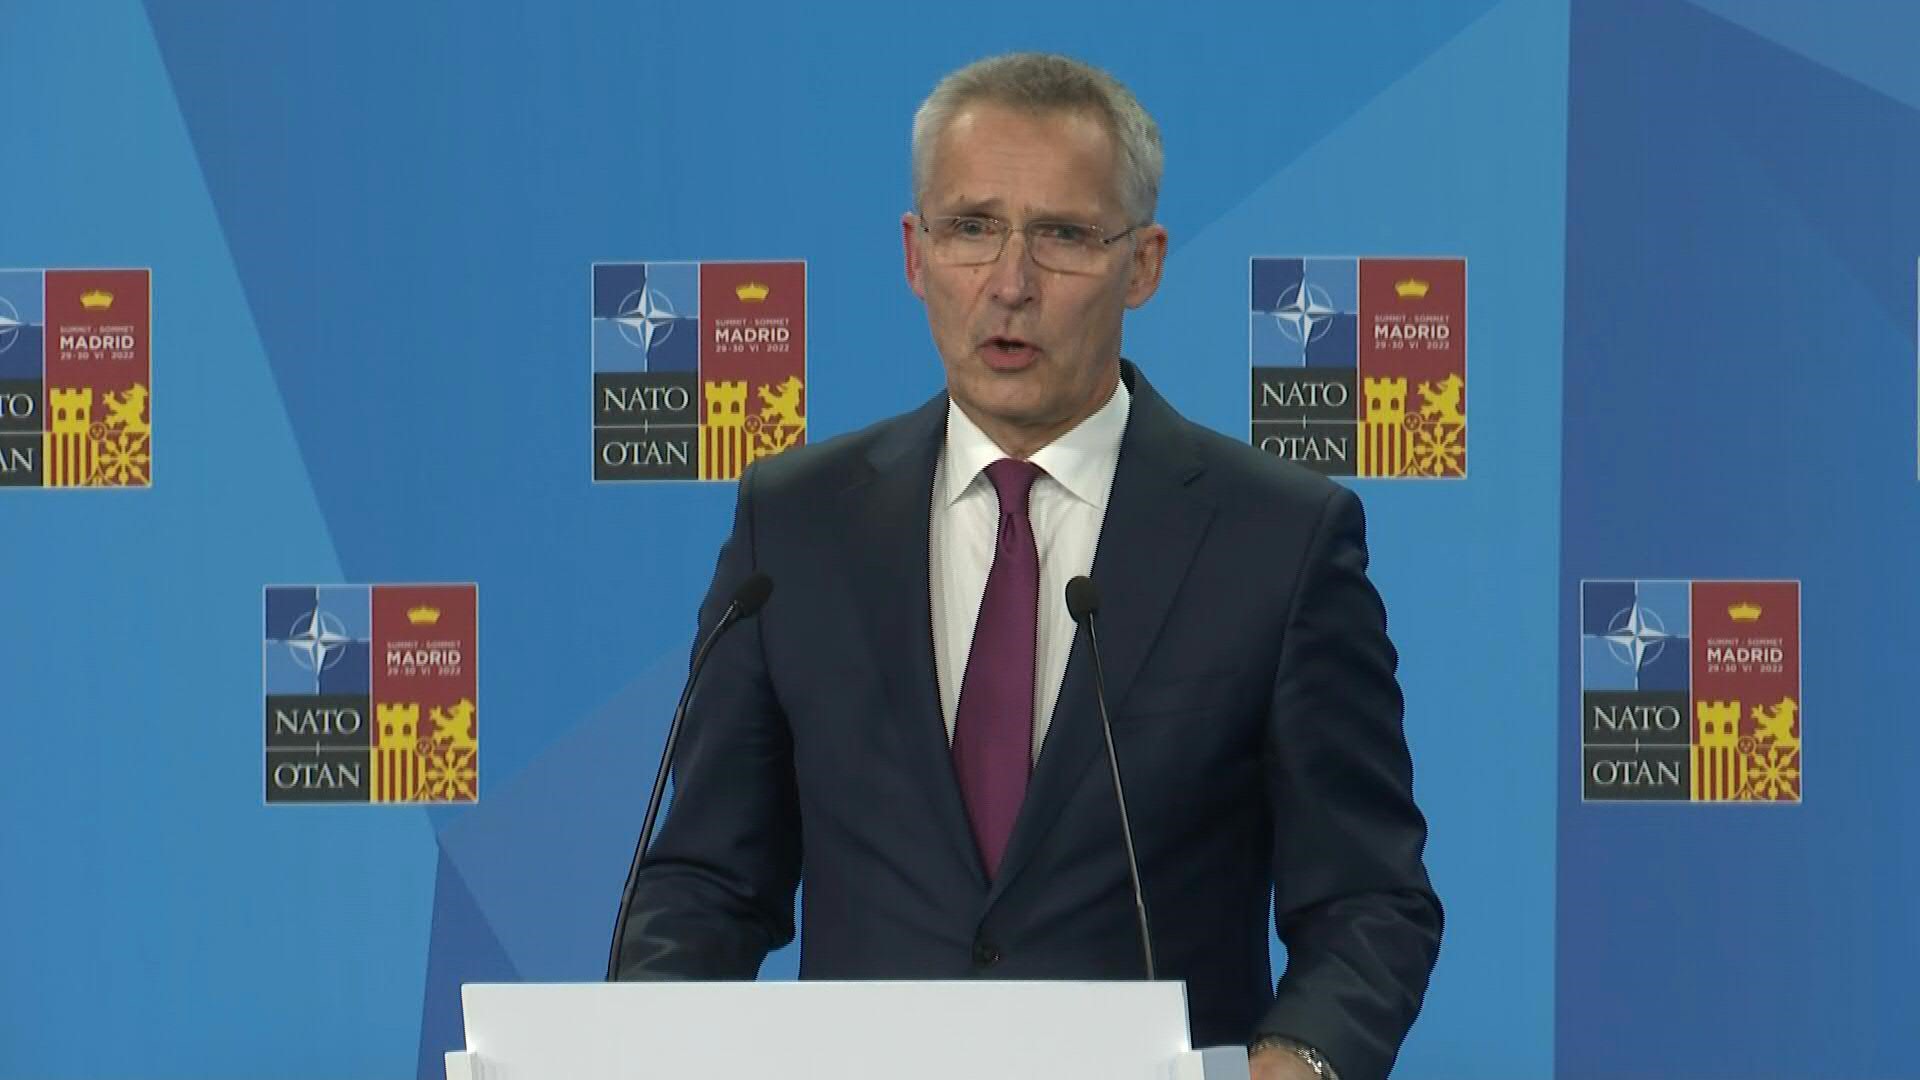 El secretario general de la OTAN aseguró que la alianza enfrenta el mayor desafío desde la Segunda Guerra Mundial